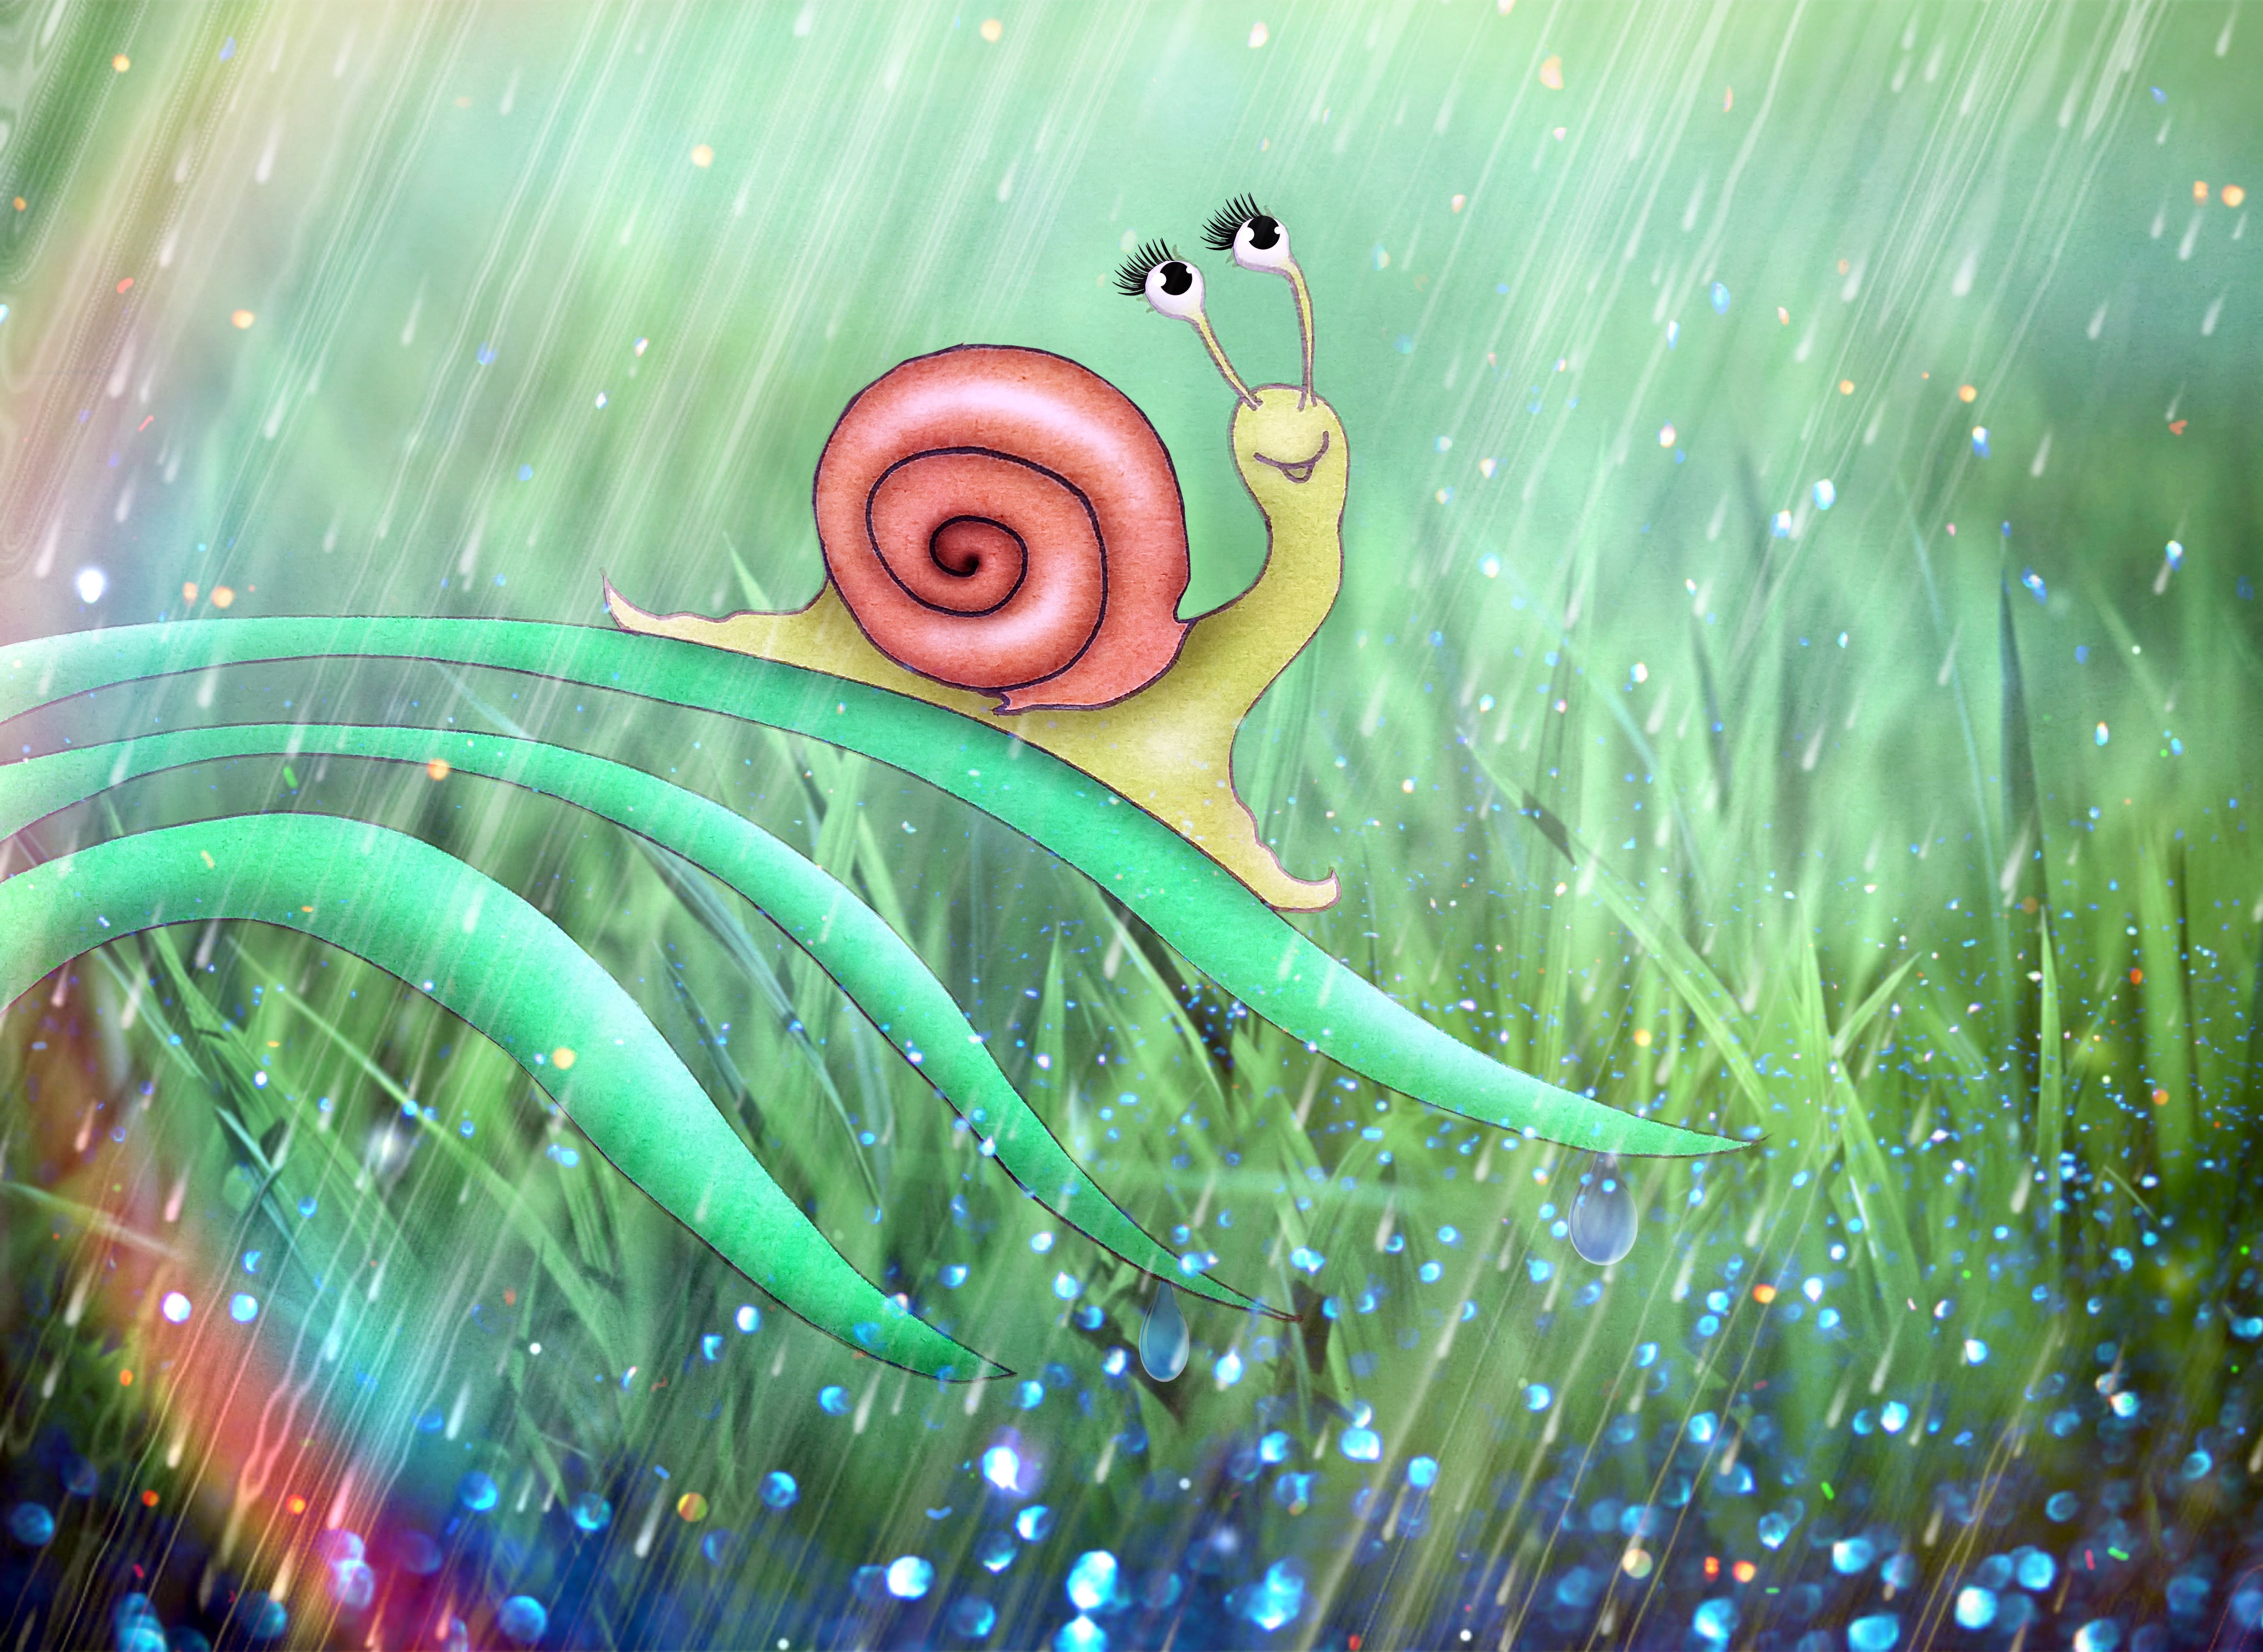 Kleurrijke illustratie met een slak op een blad. De slak heeft ogen op steeltjes. Die kijkt de kijker rechtstreeks aan en glimlacht breed. Op de achtergrond is er een grasveld in de regen.